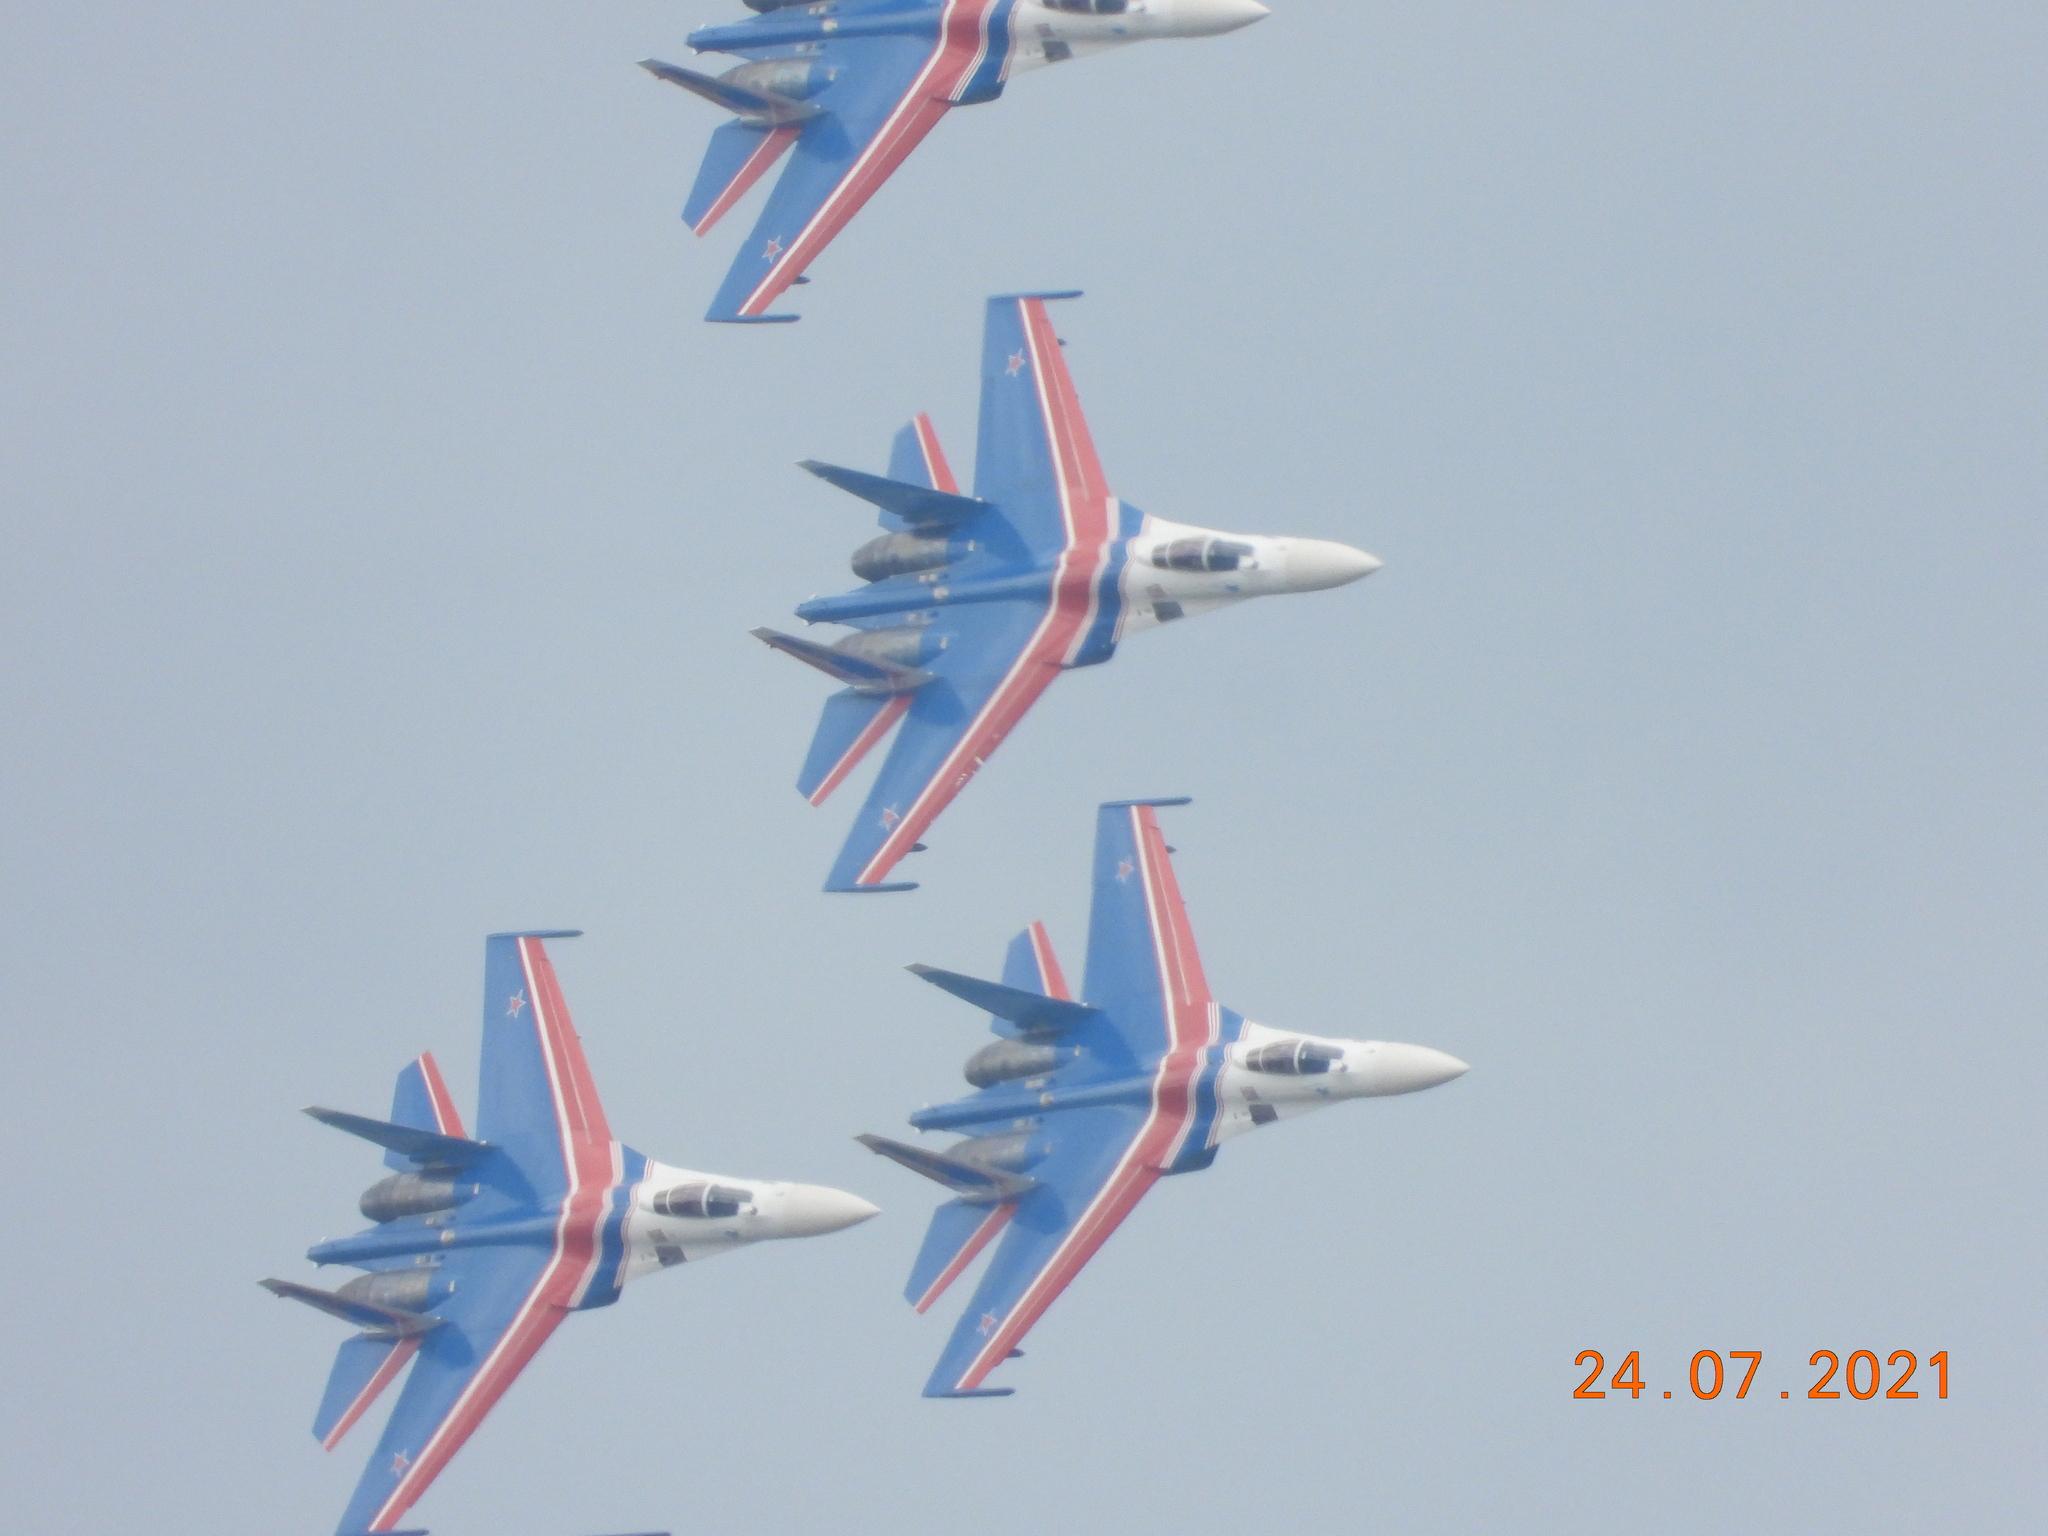 MAKS-21 - My, MAKS (air show), Air force, Aviation, Airshow, Military aviation, MiG-31, Mig-35, Su-34, Su-57, Su-35, Su-30cm, MS-21-300, Longpost